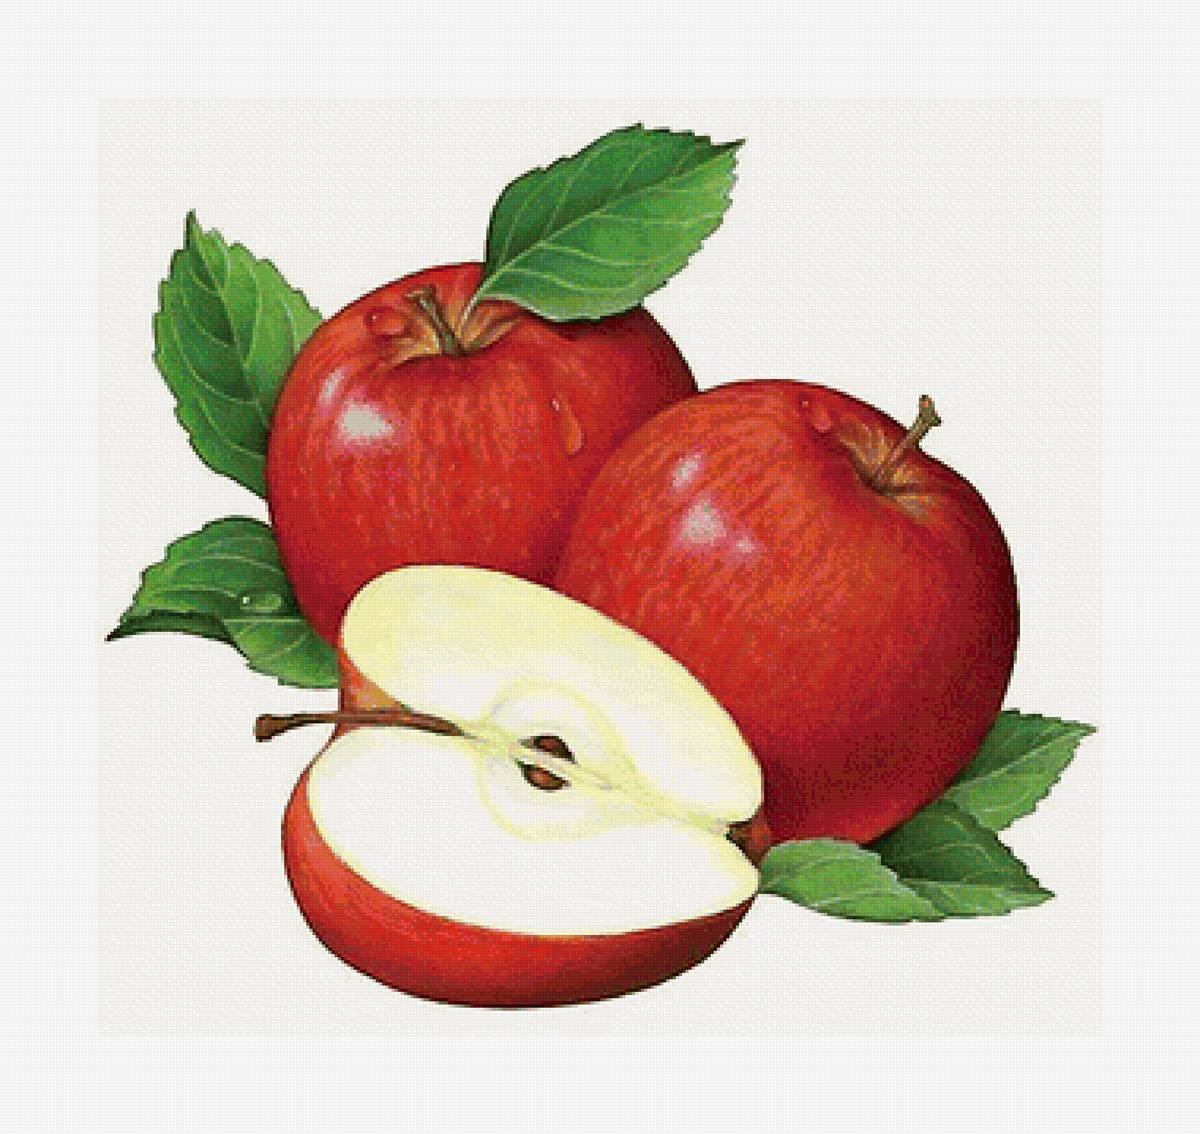 Яблоко иллюстрация